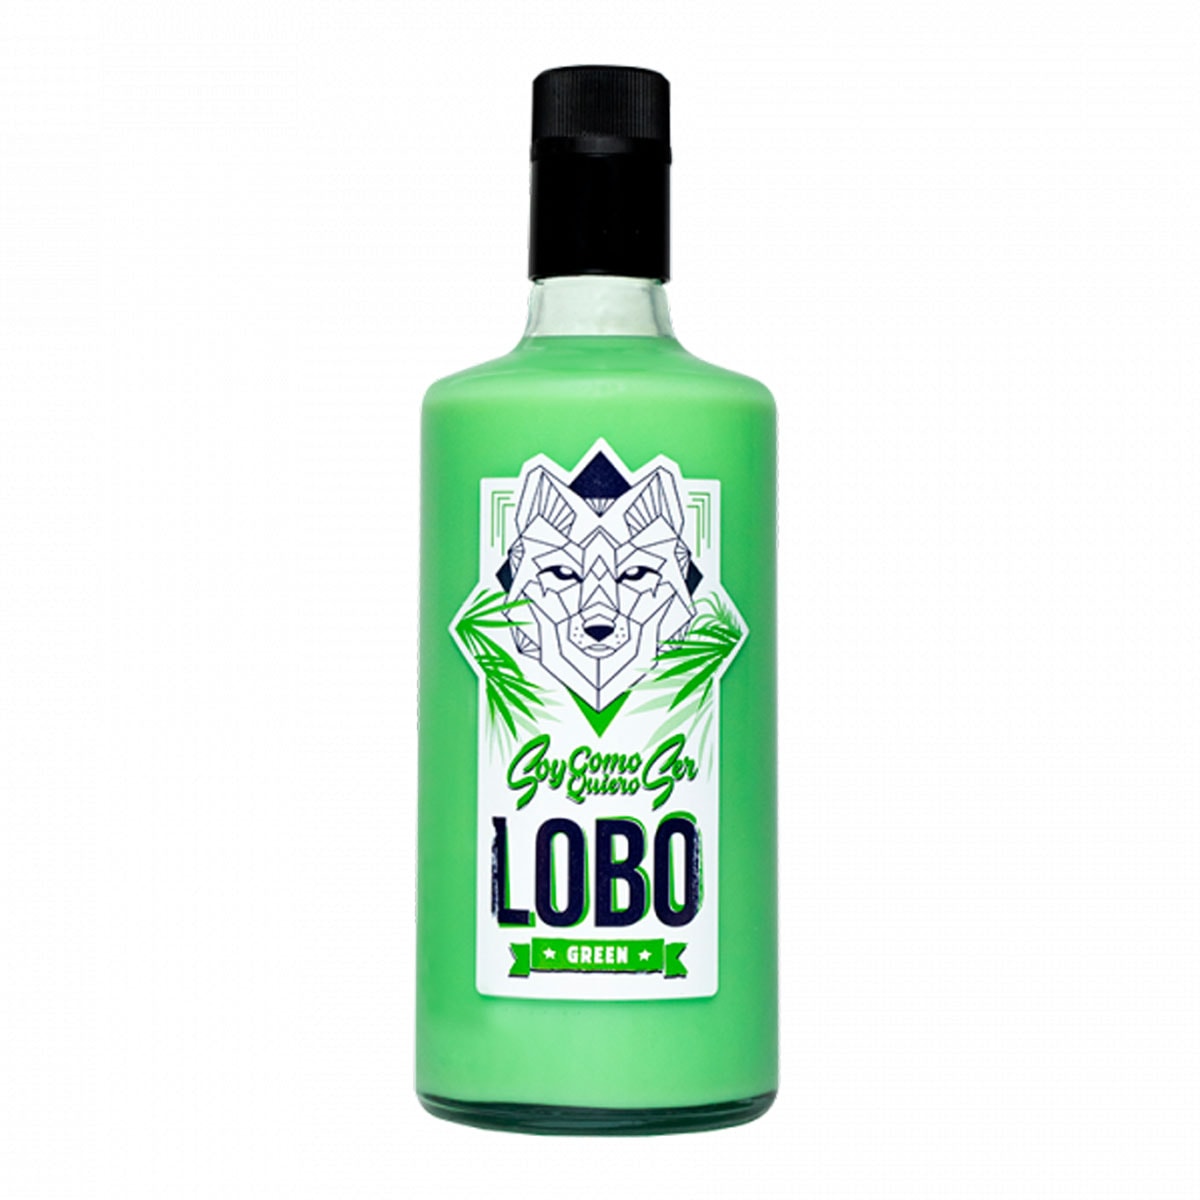 Lobo crema tequila sandía-melón green (ágave) 70 cl